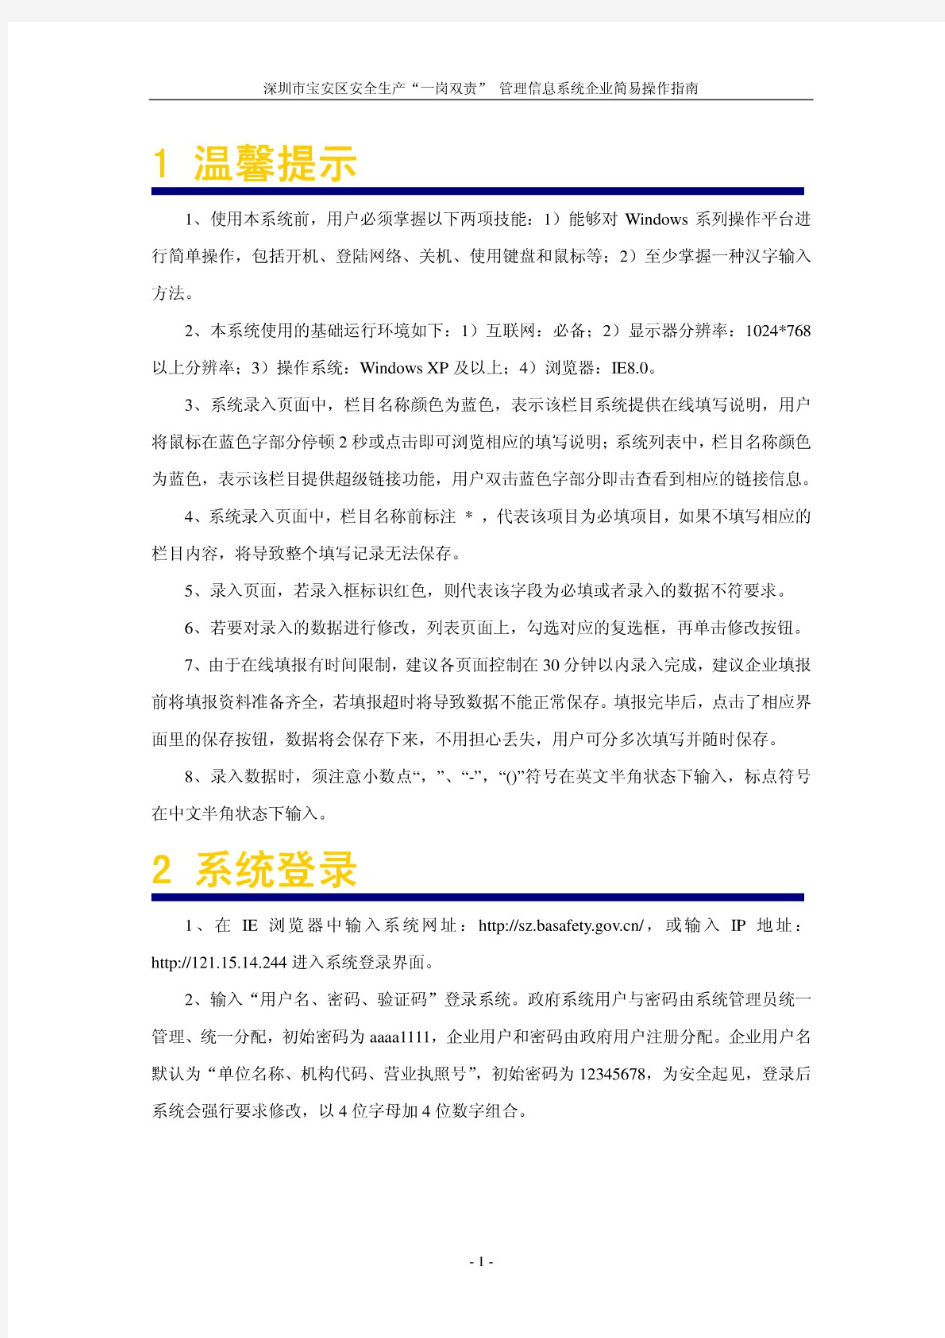 深圳市宝安区安全生产一岗双责 管理信息系统